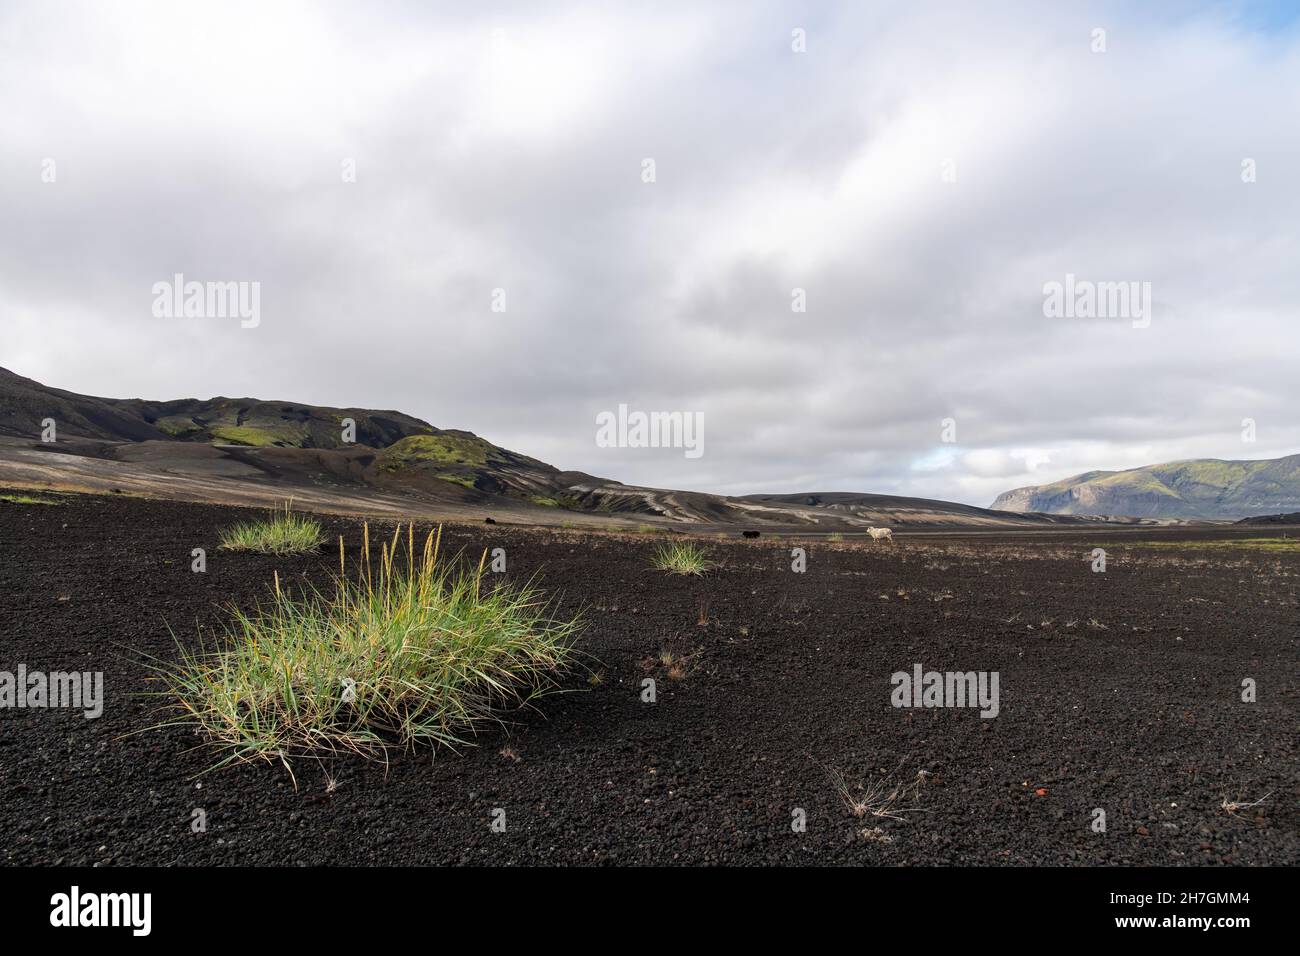 Vista ad angolo basso di alcune erbe in un paesaggio altrimenti arido di roccia lavica nera dal vicino vulcano Katla sull'Islanda con le montagne sul retro Foto Stock